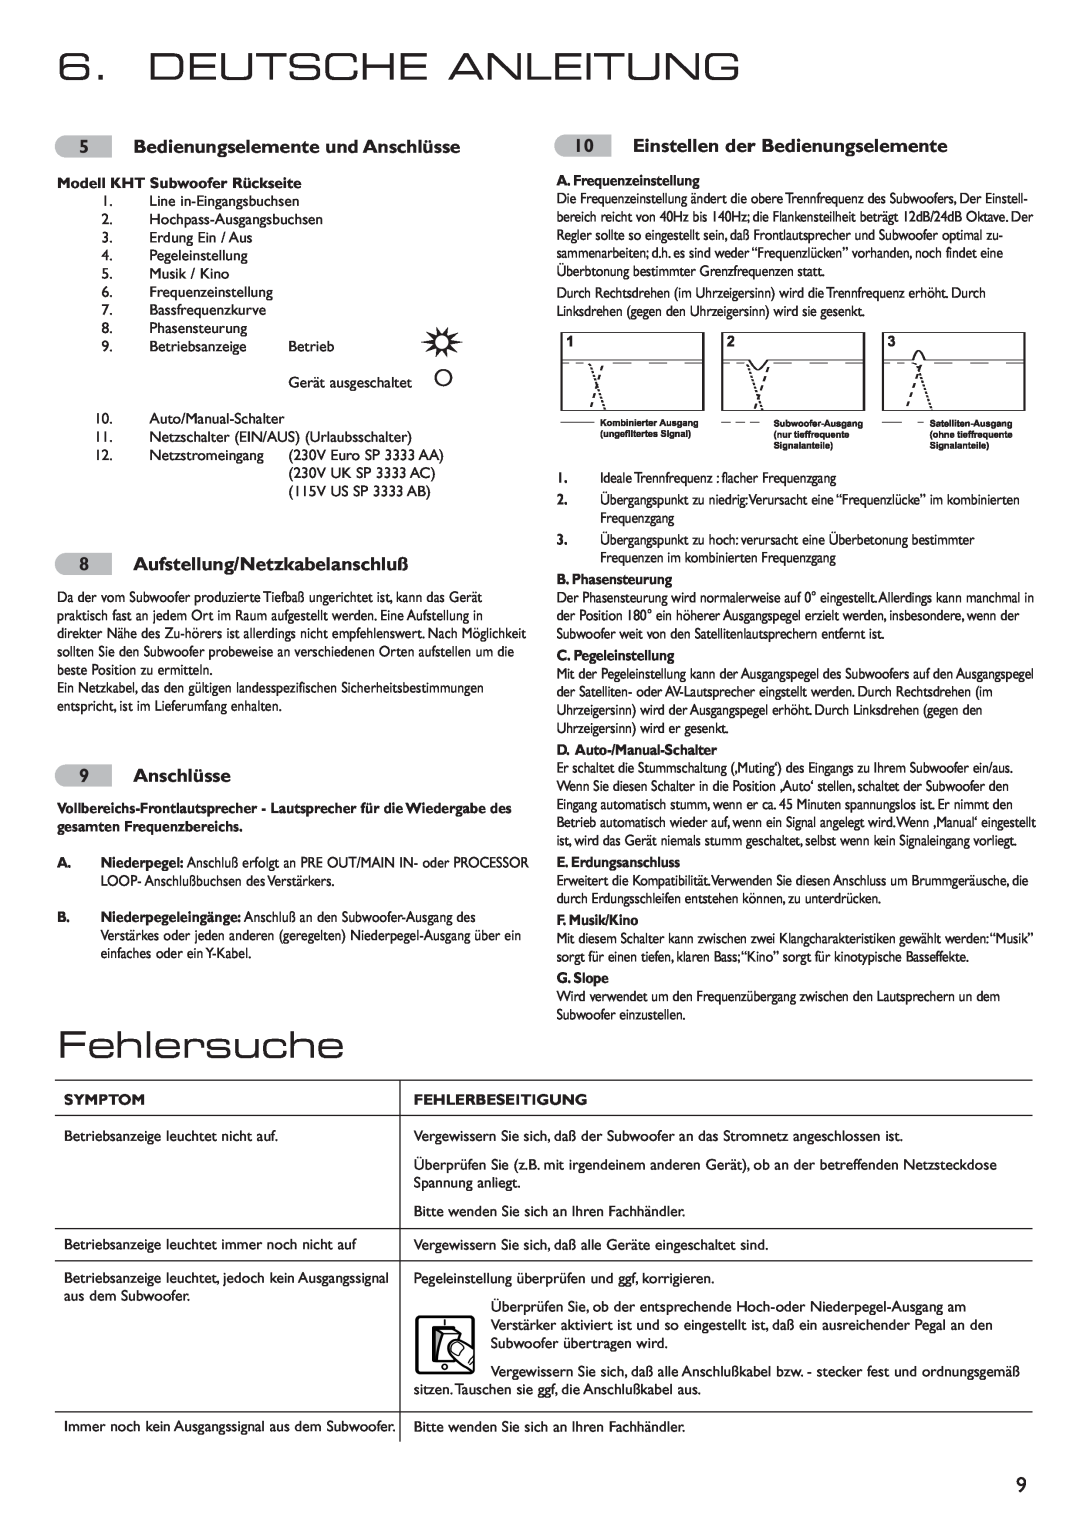 KEF Audio 290149ML installation manual Deutsche Anleitung, Fehlersuche, Aufstellung/Netzkabelanschluß, Anschlüsse 